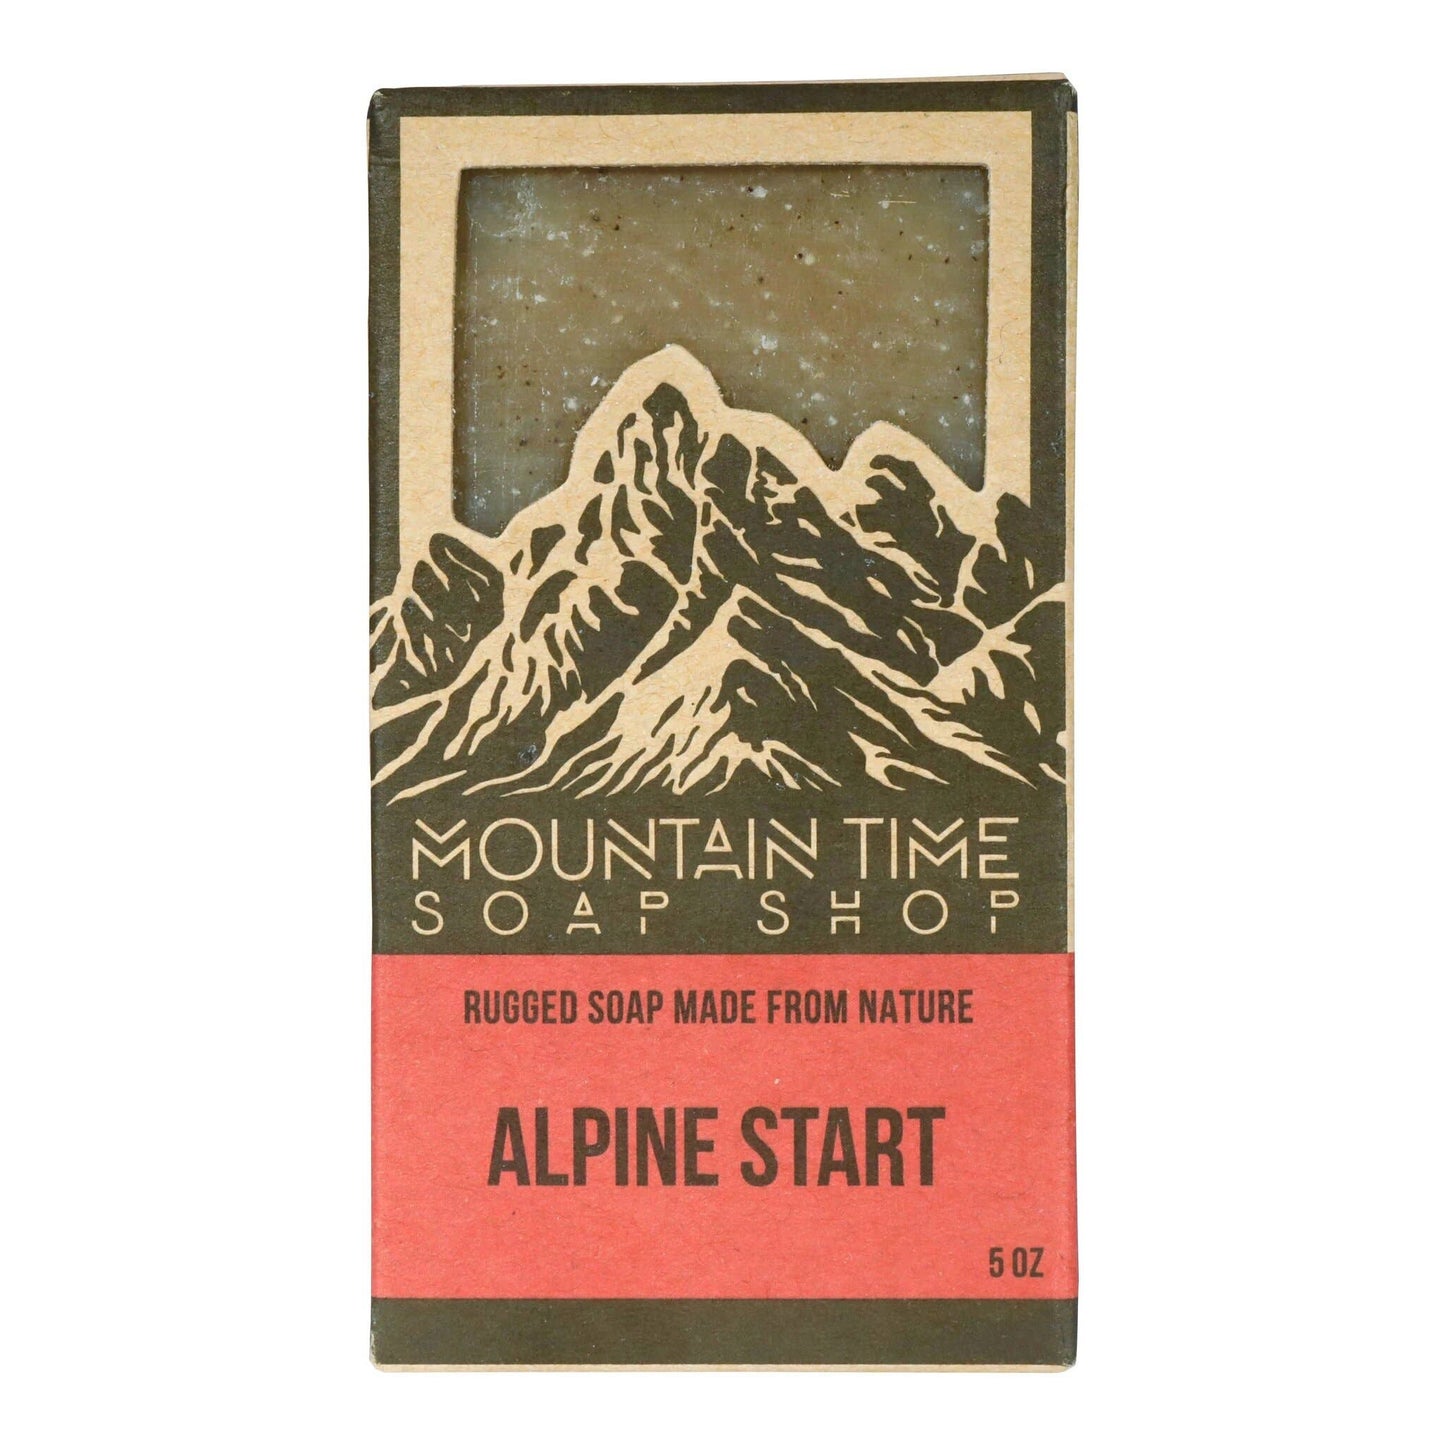 Alpine Start Soap Bar